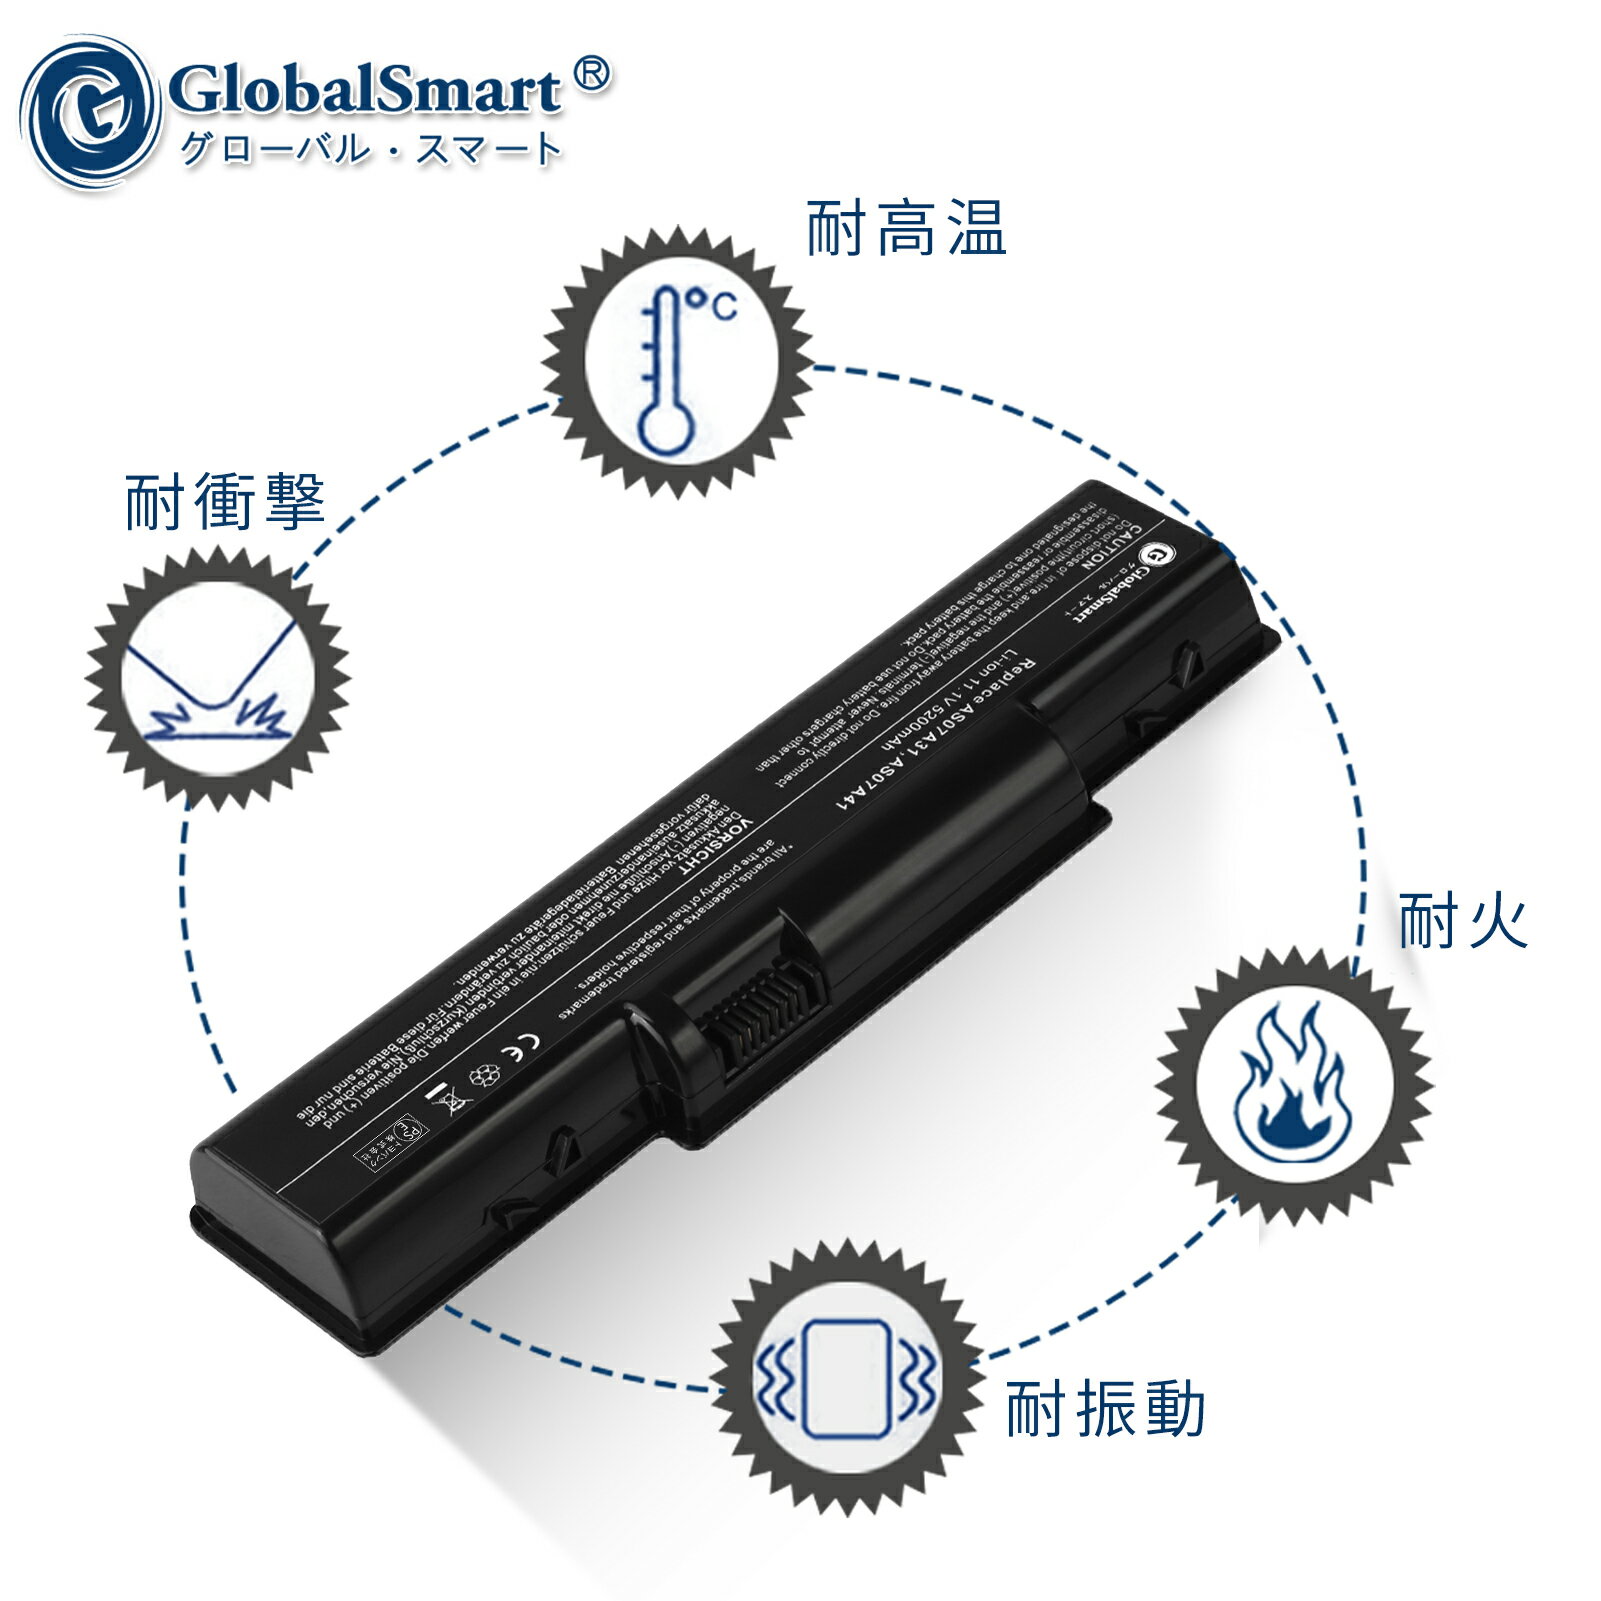 Globalsmart 新品 ACER AK.006BT.025 互換バッテリー【5200mAh 11.1V】対応用 1年保証 高性能 PSE認証 互換バッテリパック XDY 3